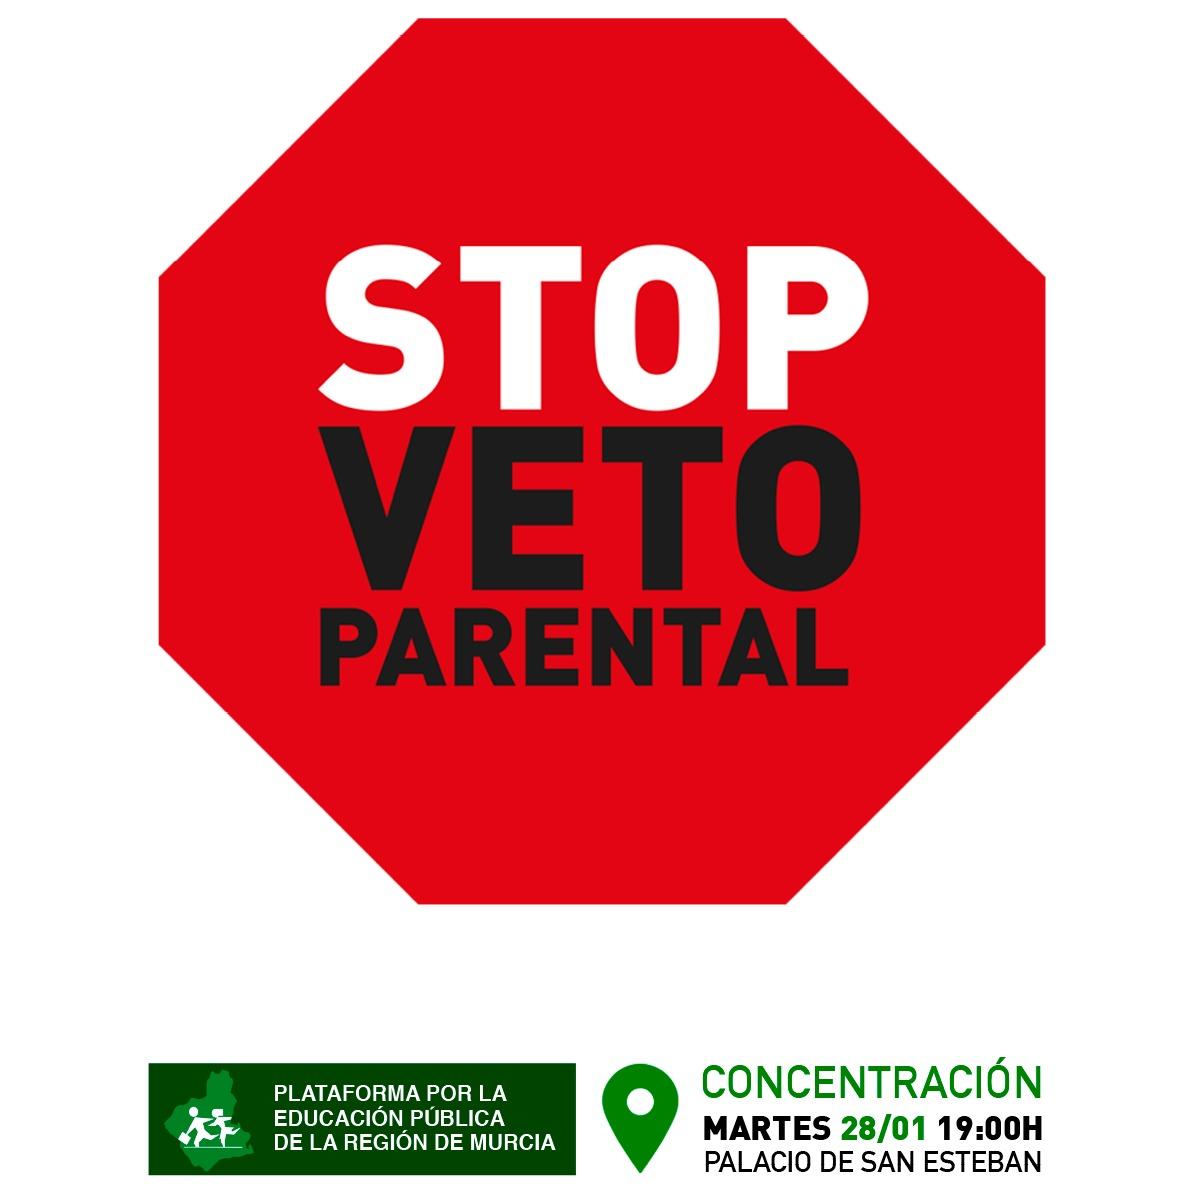 Concentración contra el veto parental.